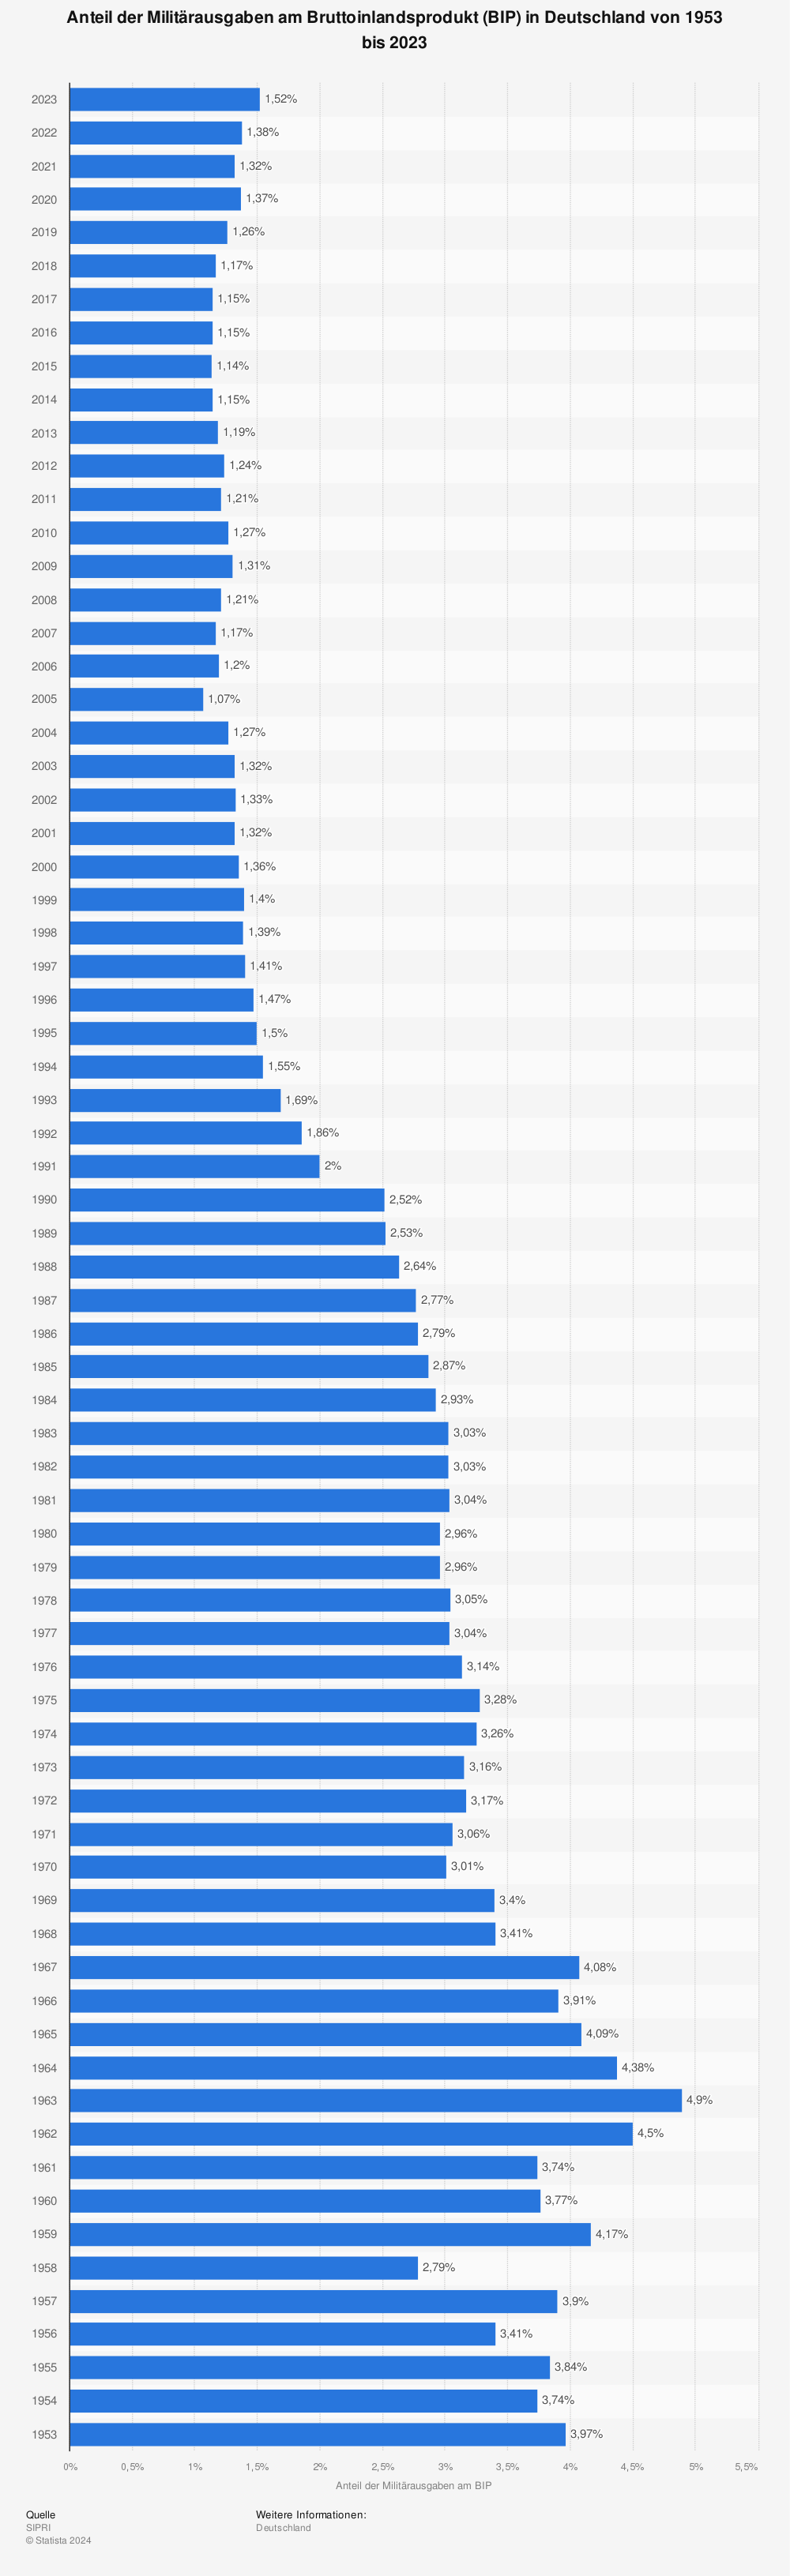 Statistik: Anteil der Militärausgaben am Bruttoinlandsprodukt (BIP) in Deutschland von 2006 bis 2021 | Statista